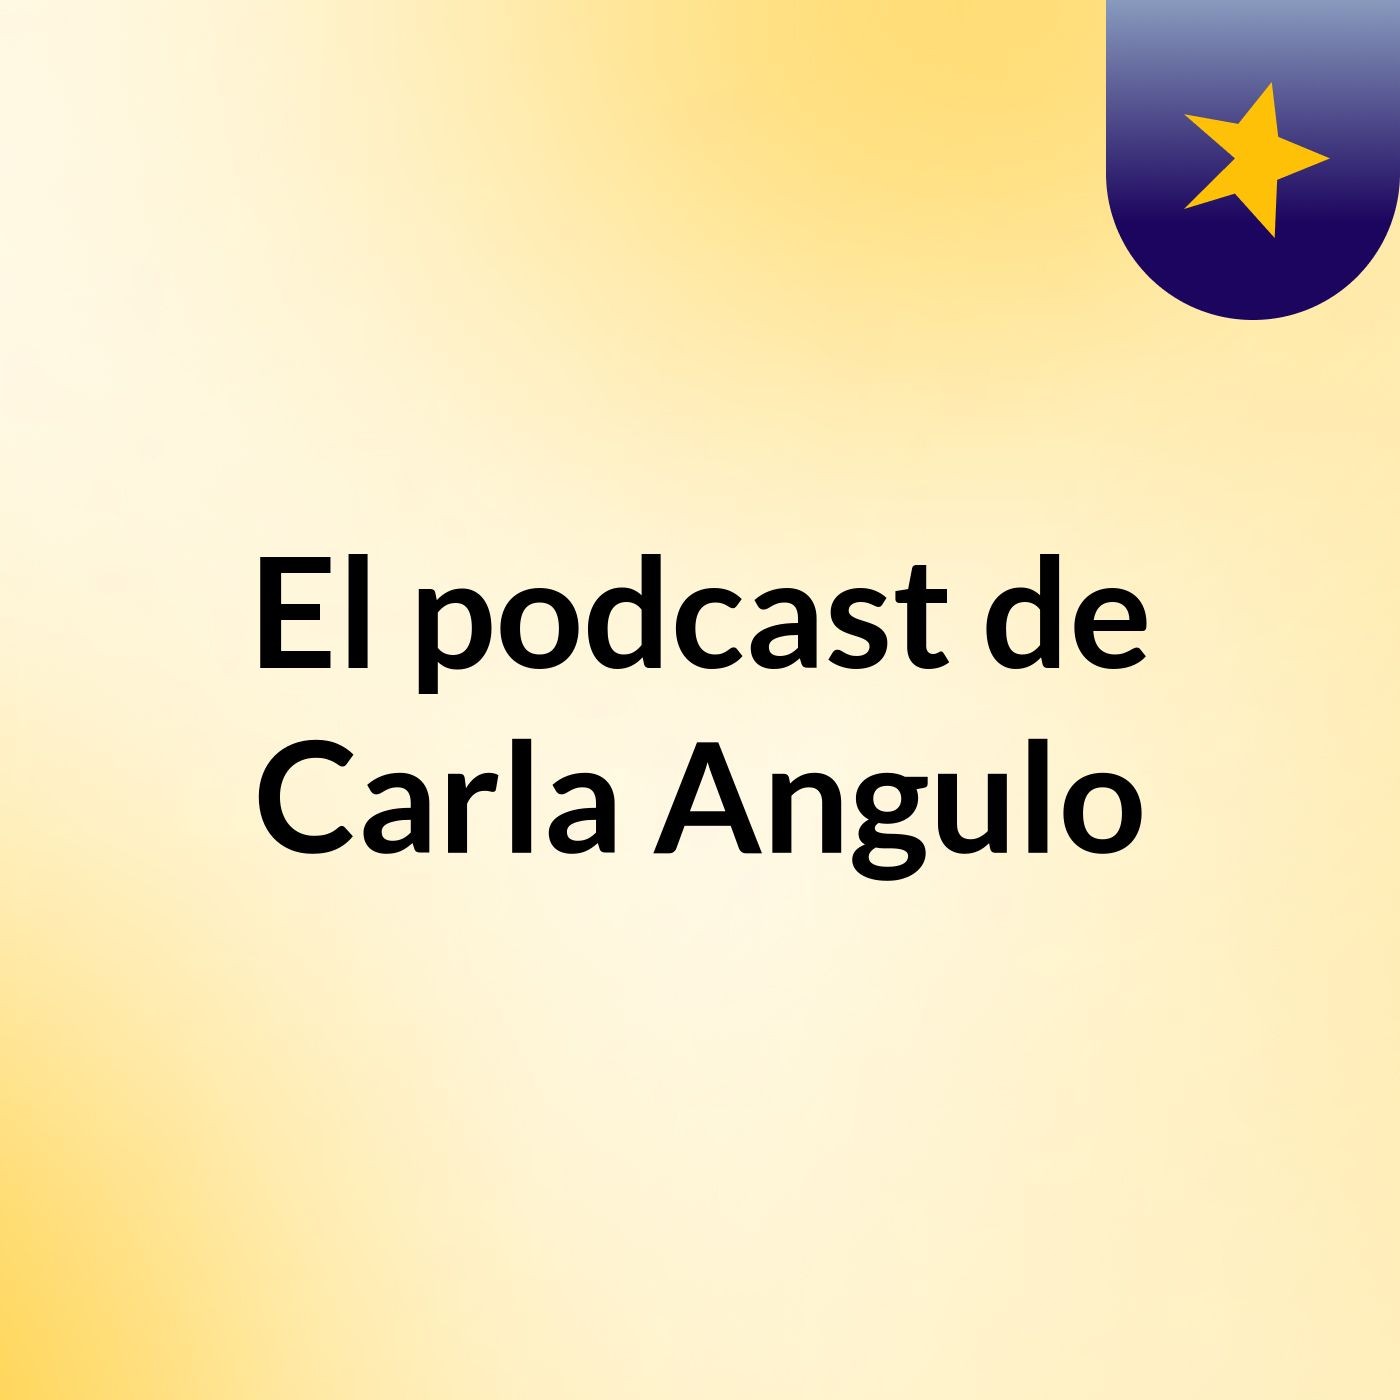 El podcast de Carla Angulo